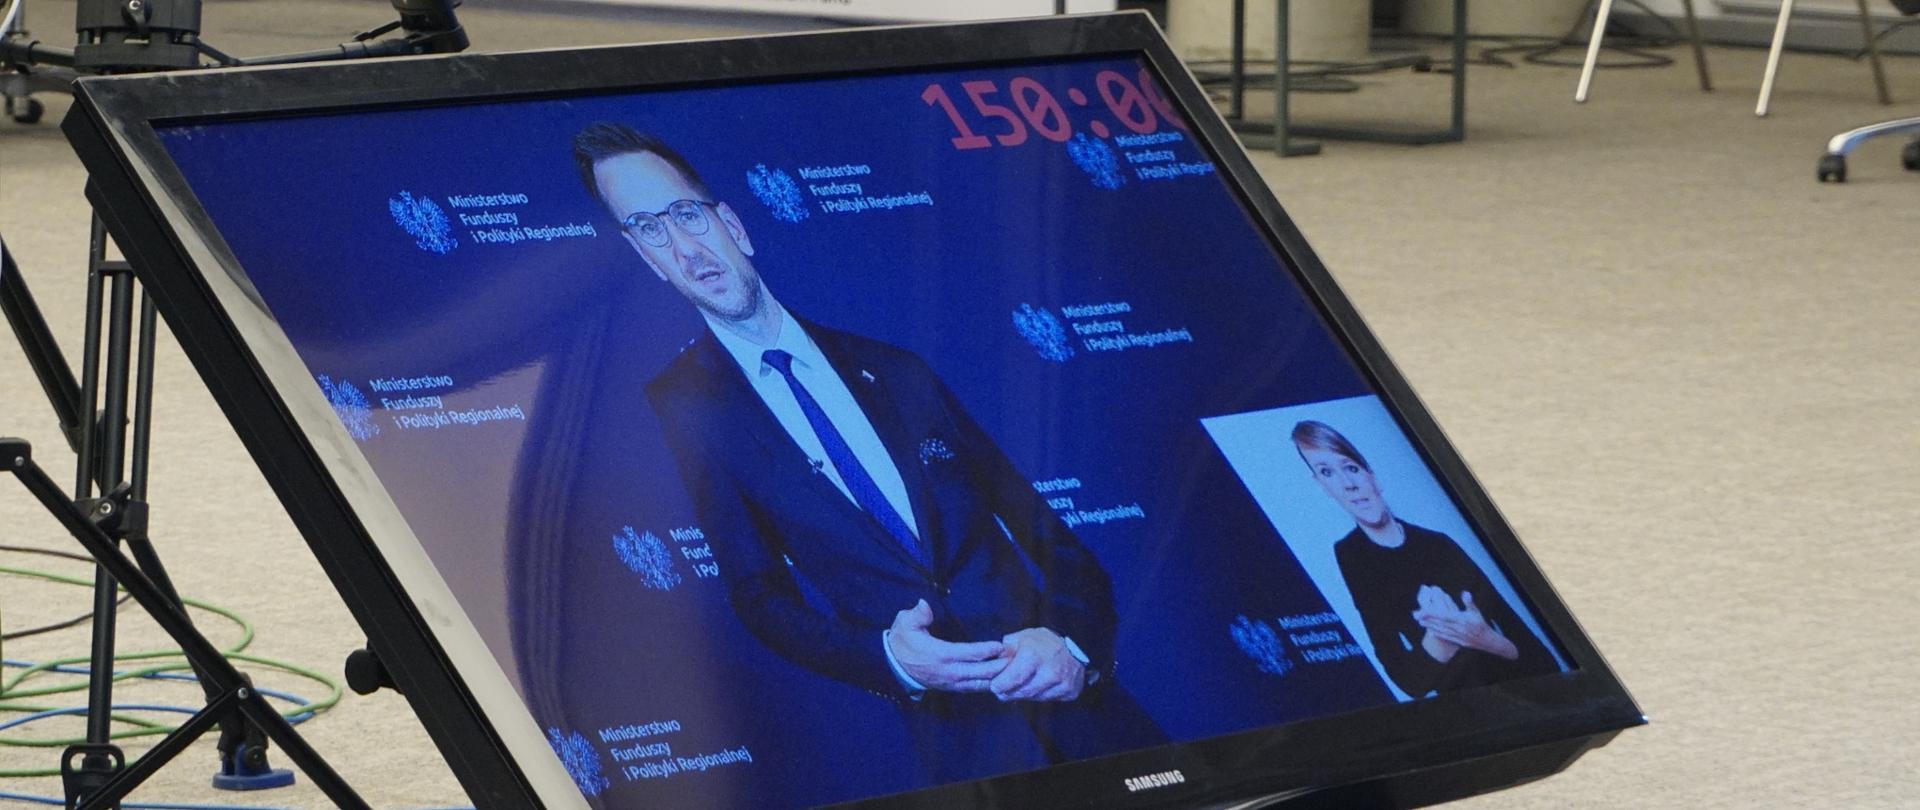 Na monitorze, który stoi na podłodze, zdjęcie wiceministra Waldemara Budy